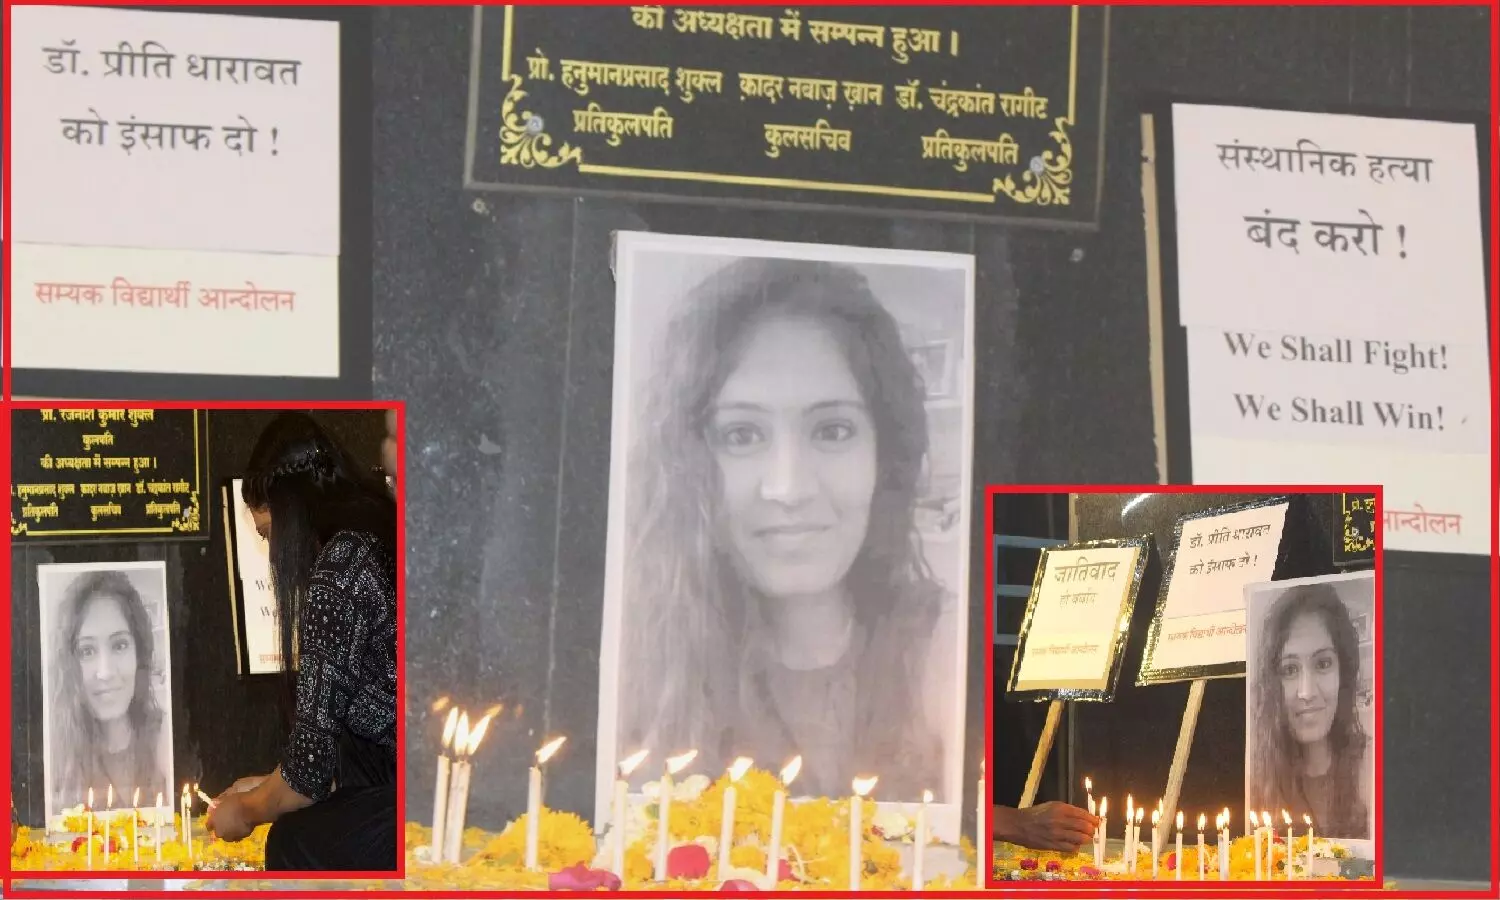 काकतीय मेडिकल कॉलेज की आदिवासी मेडिकल छात्रा डॉ. प्रीति की मौत मानसिक उत्पीड़न और सांस्थानिक हत्या, हिंदी विश्वविद्यालय में प्रतिरोध सभा आयोजित